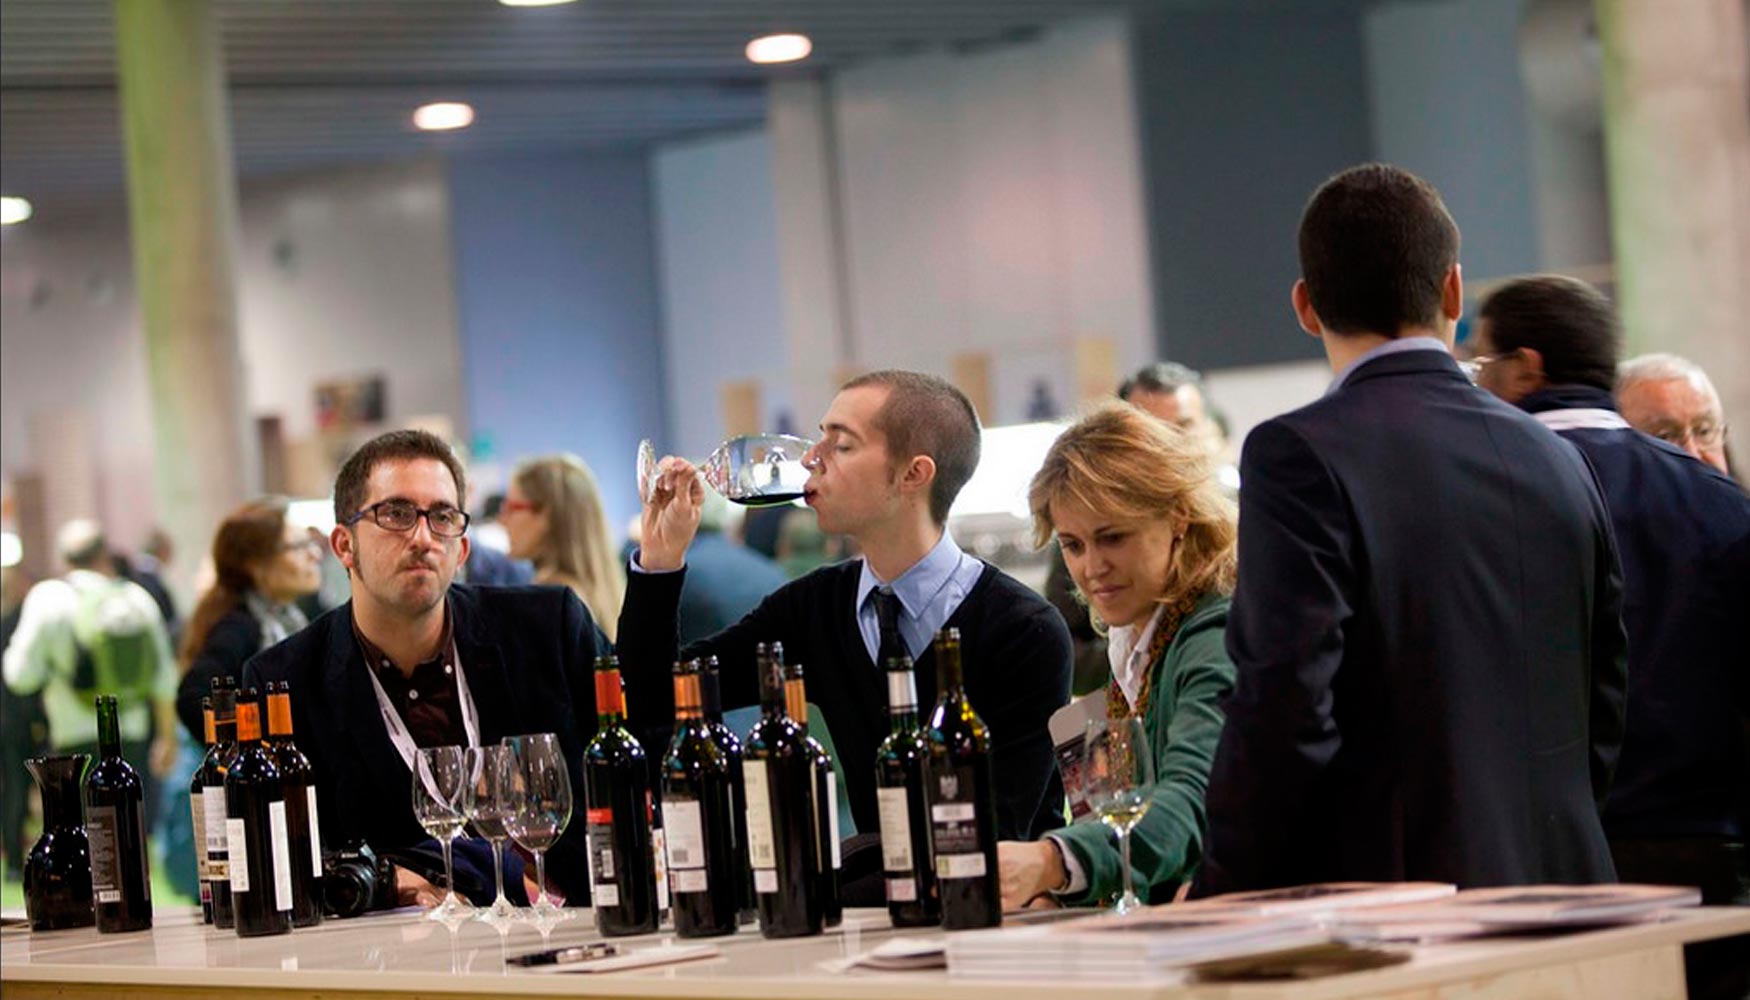 Una decena de catas magistrales permitirn descubrir los vinos que marcan tendencia